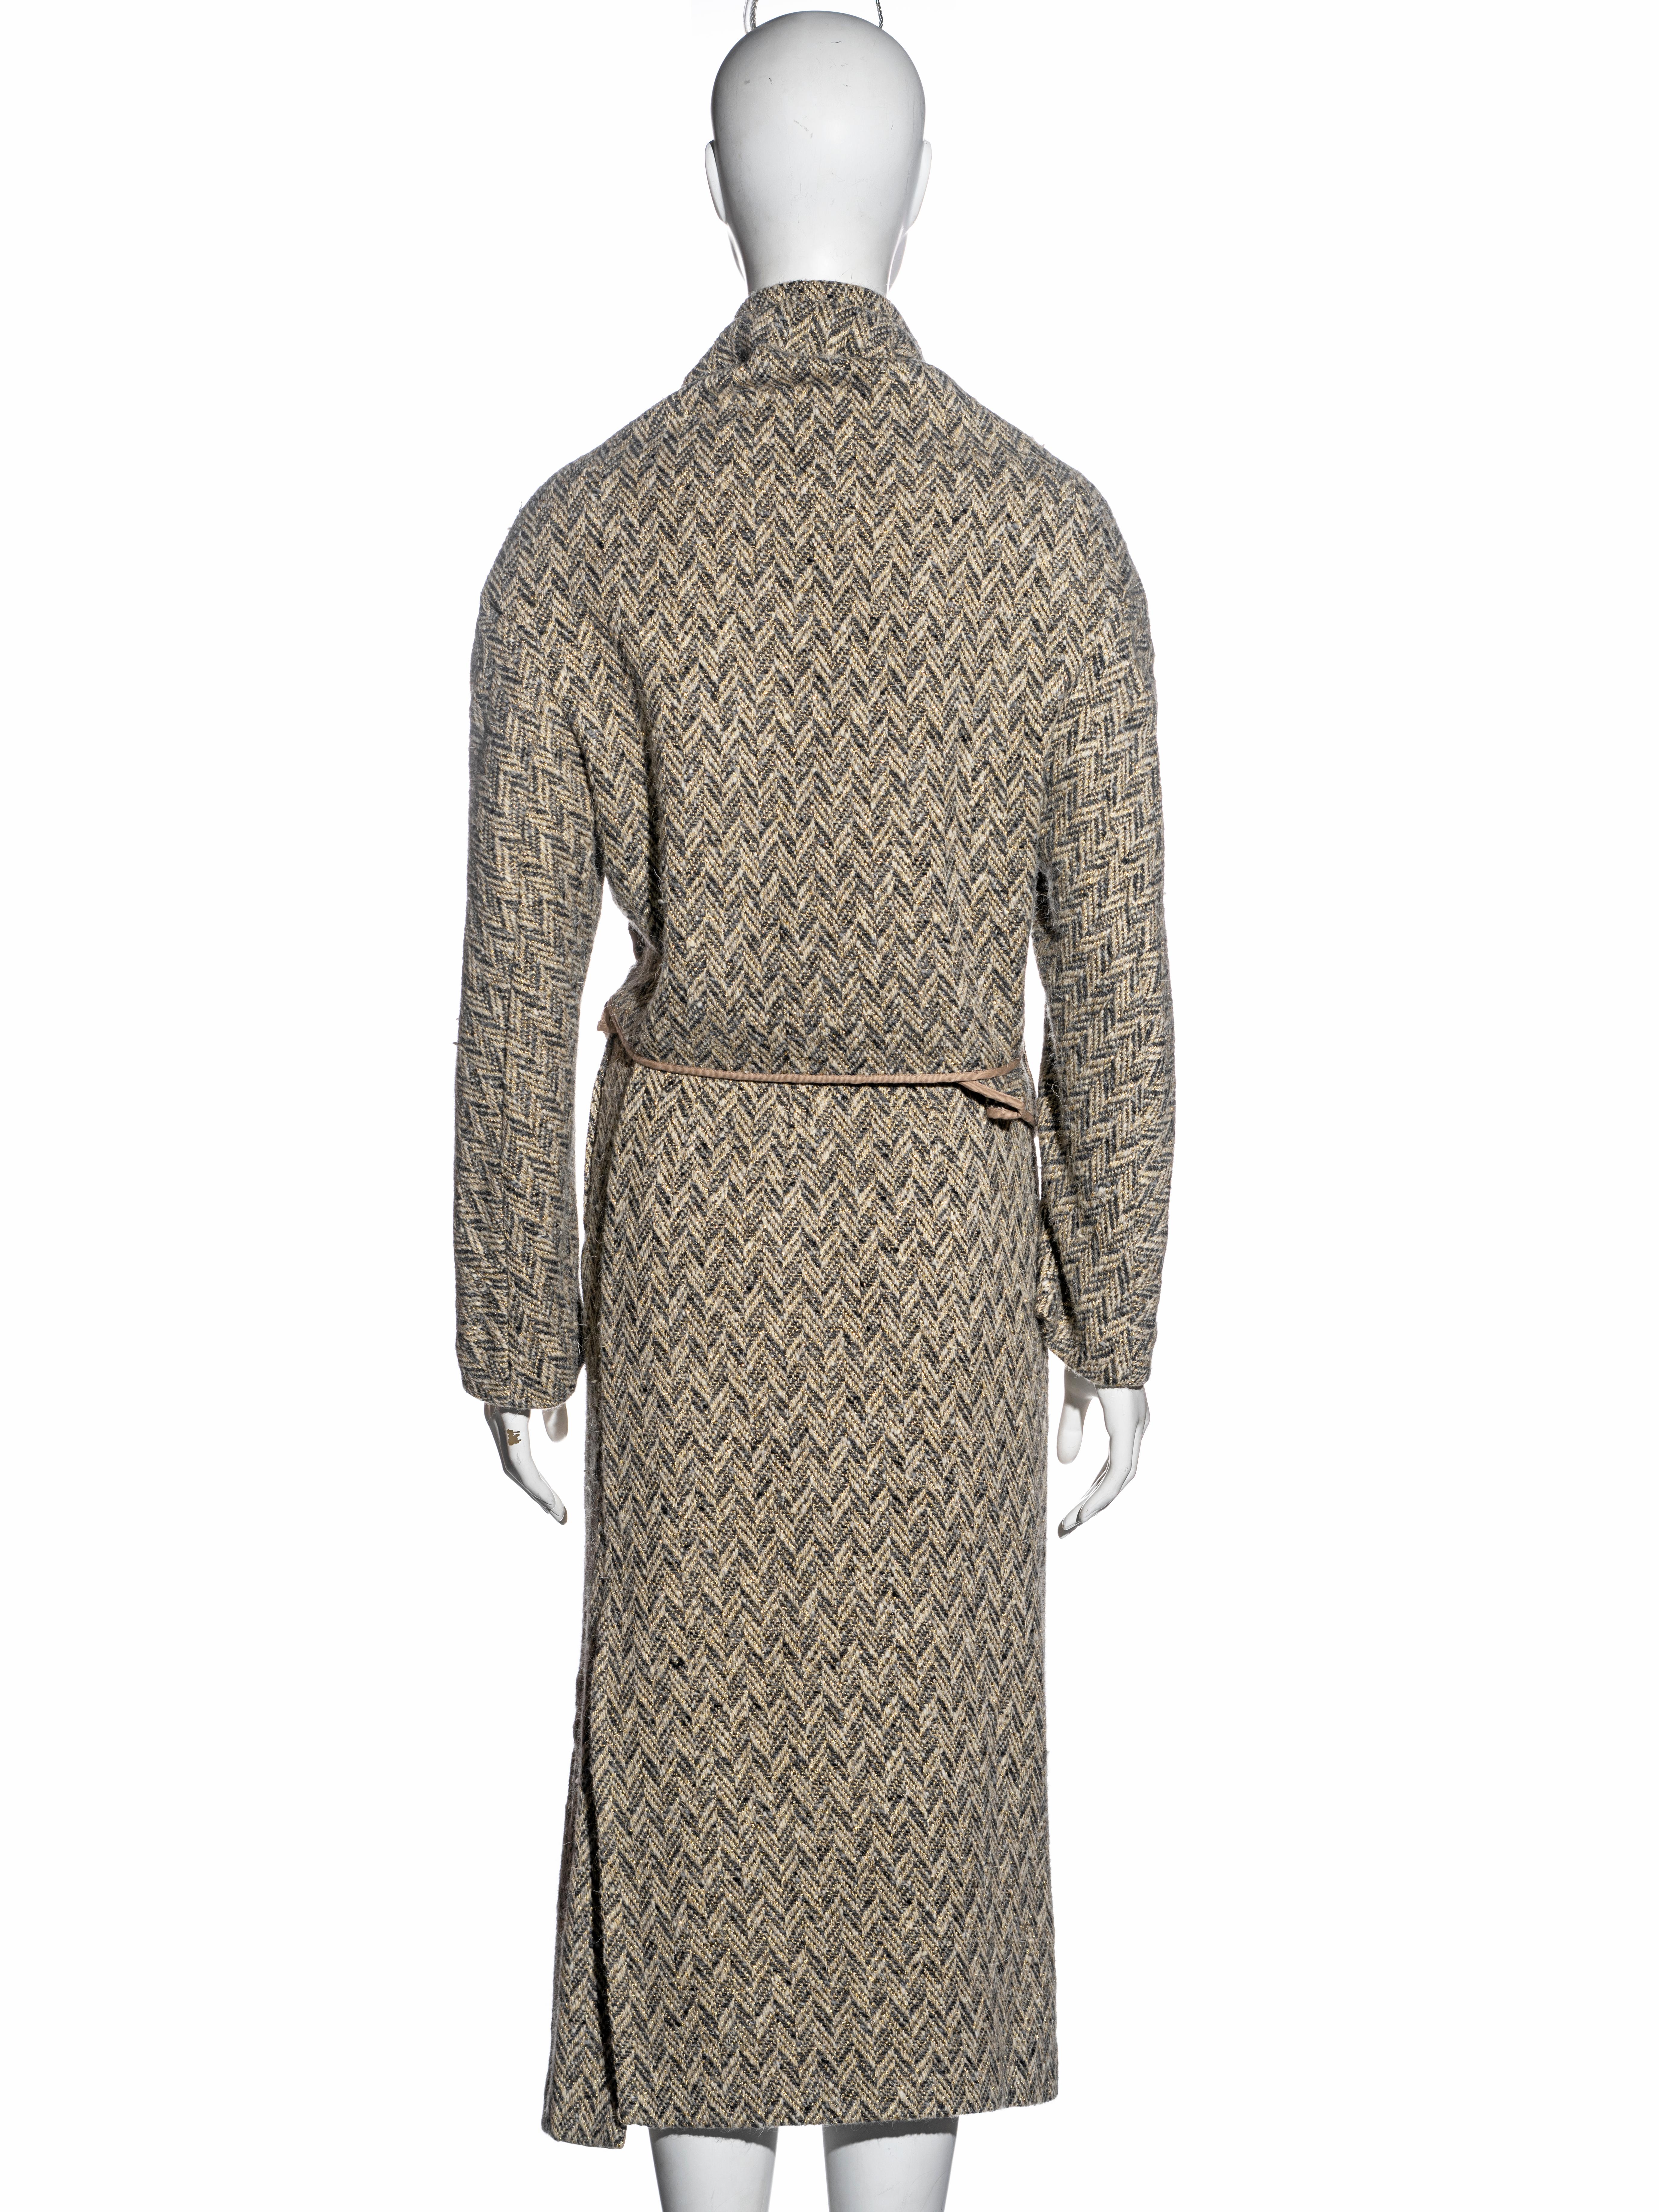 Comme des Garçons bias-cut herringbone tweed skirt suit, fw 1999 For Sale 5